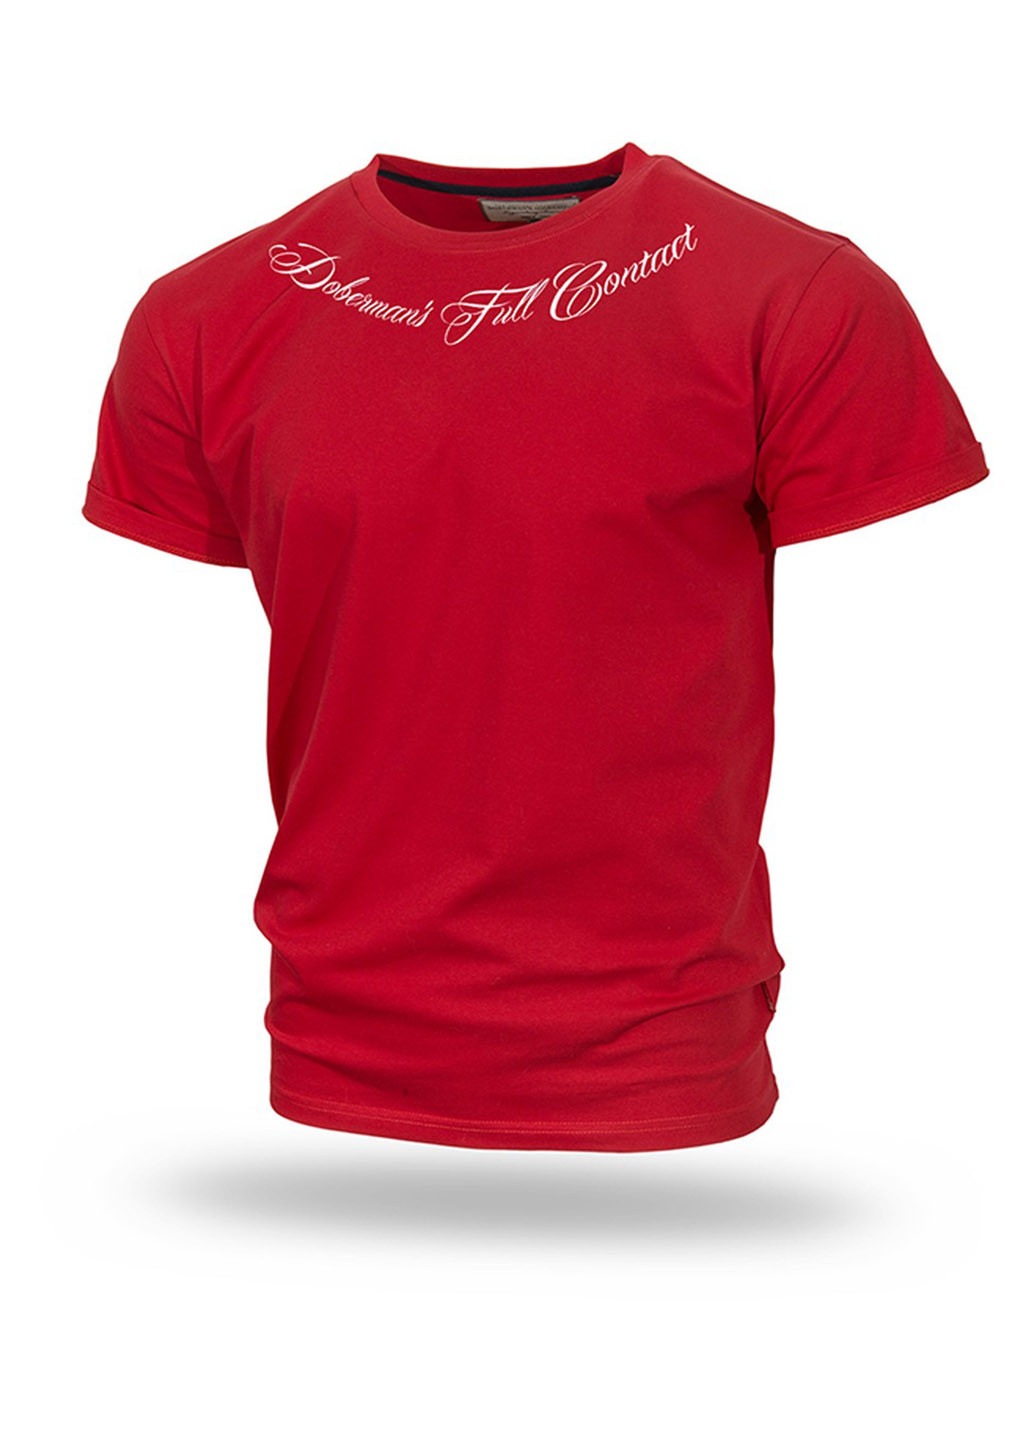 Червона футболка dobermans full contact ts159rd Dobermans Aggressive